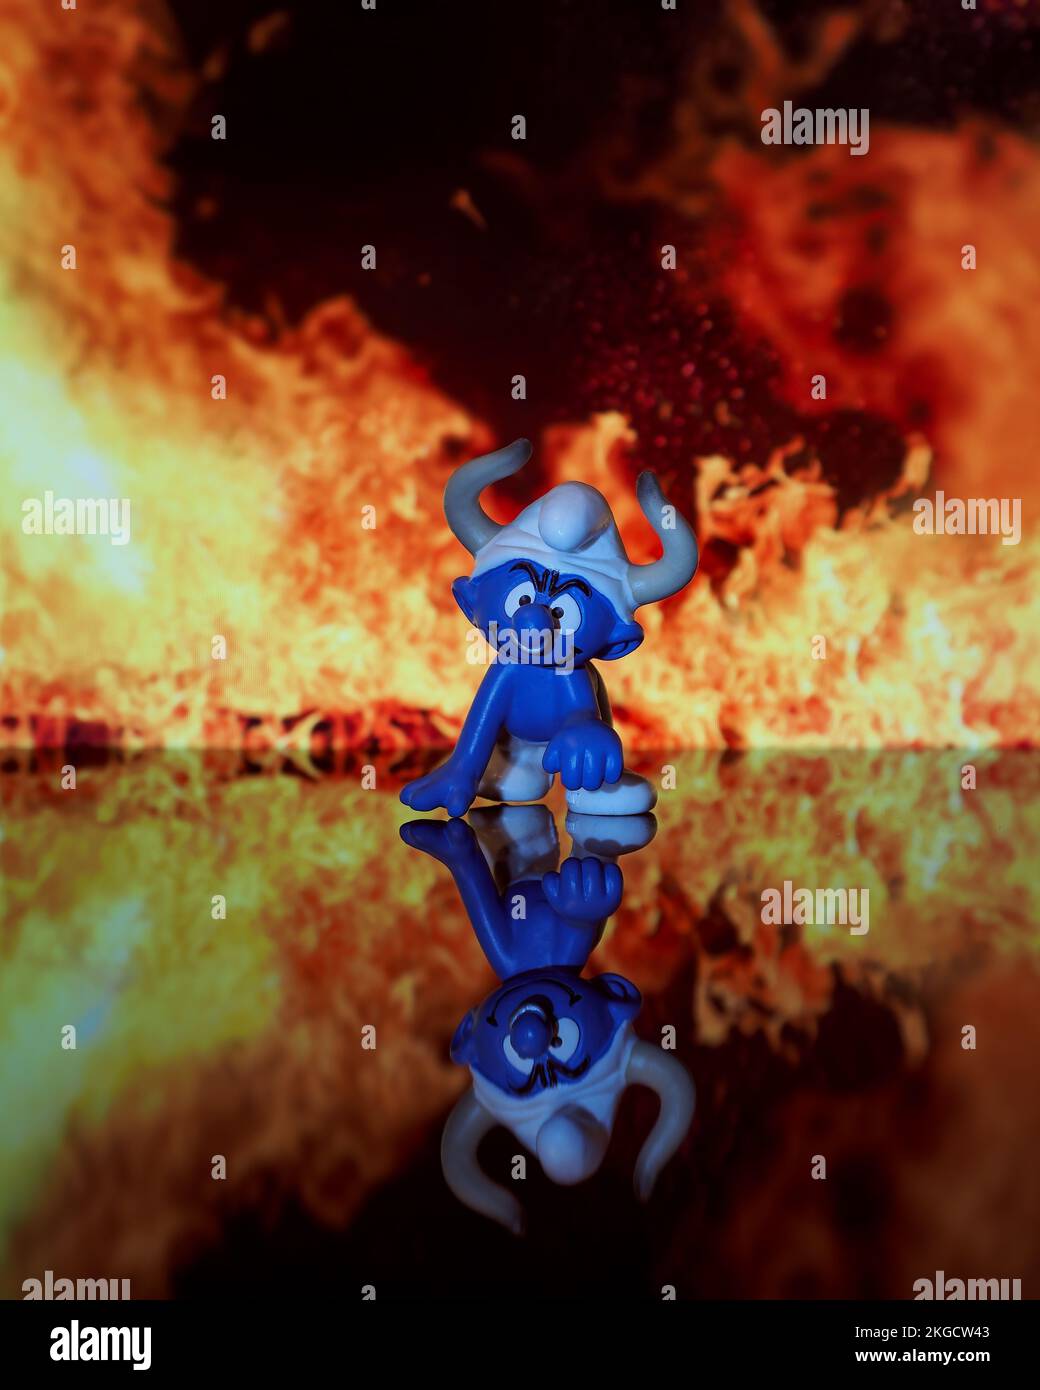 Una fotografía vertical de un pequeño héroe de dibujos animados azul arrodillado con un sombrero con llamas en el fondo Foto de stock